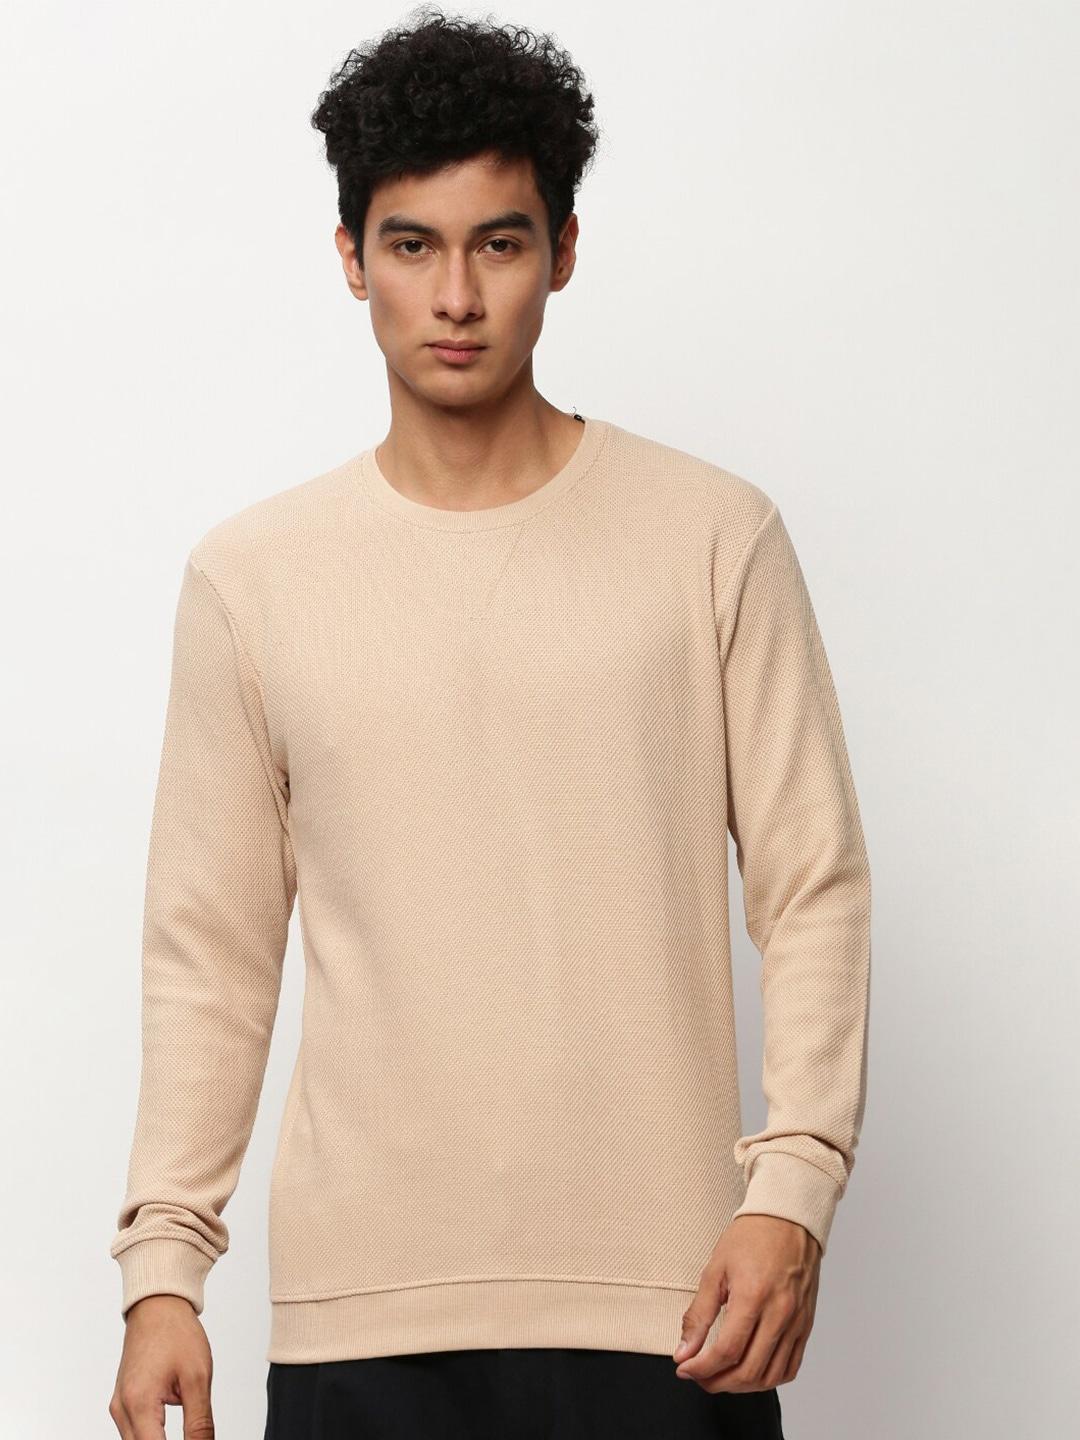 showoff self design cotton sweatshirt